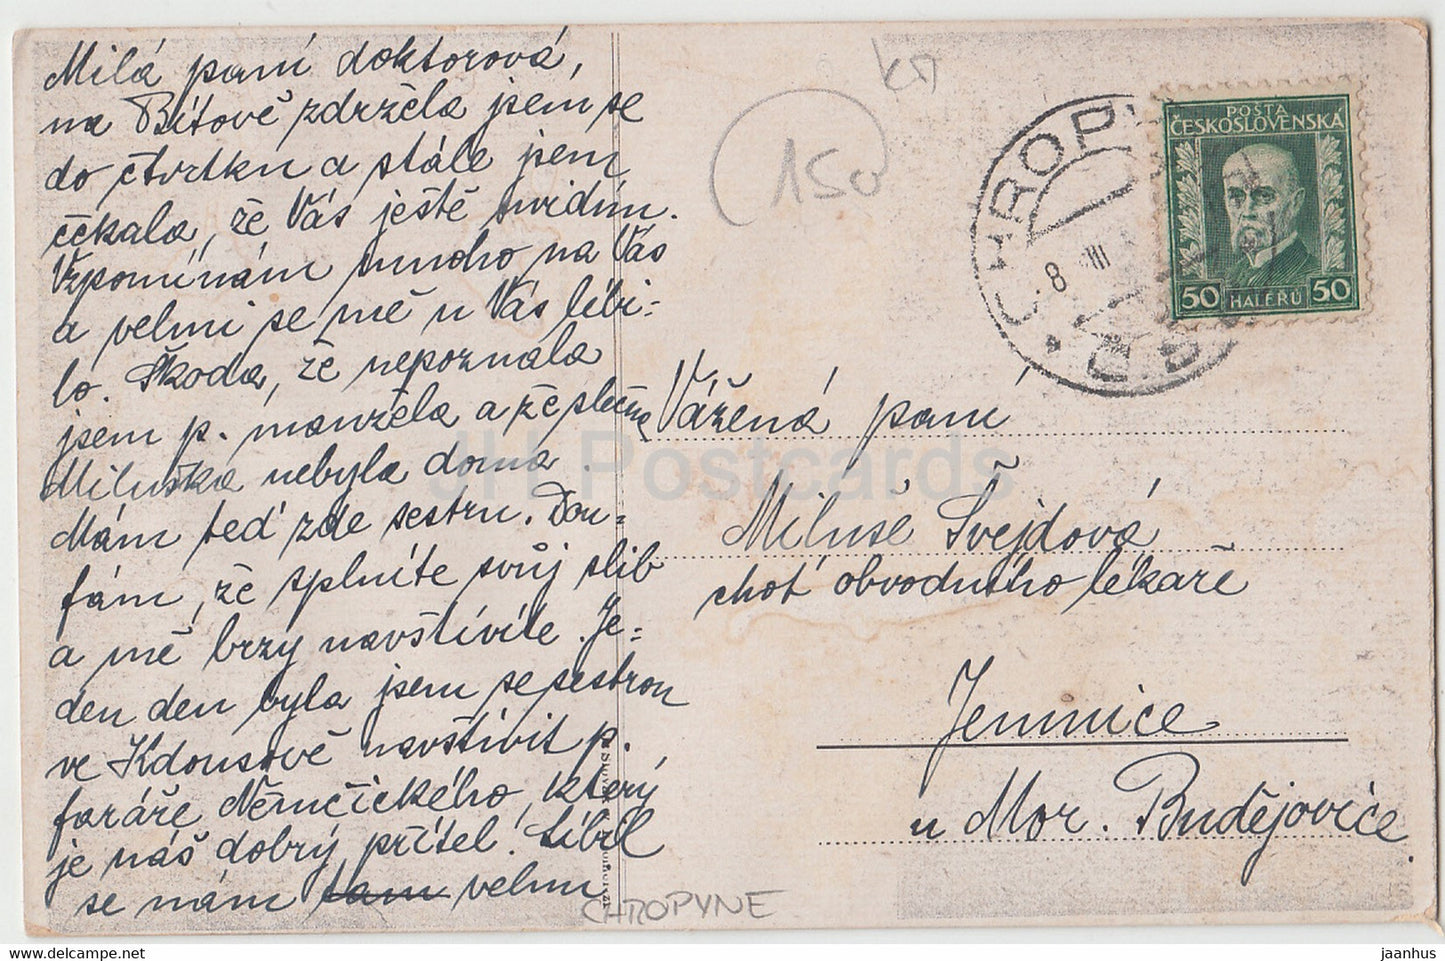 Pozdrav z Chropine - Chropyne - old postcard - Czech Republic - Czechoslovakia - used